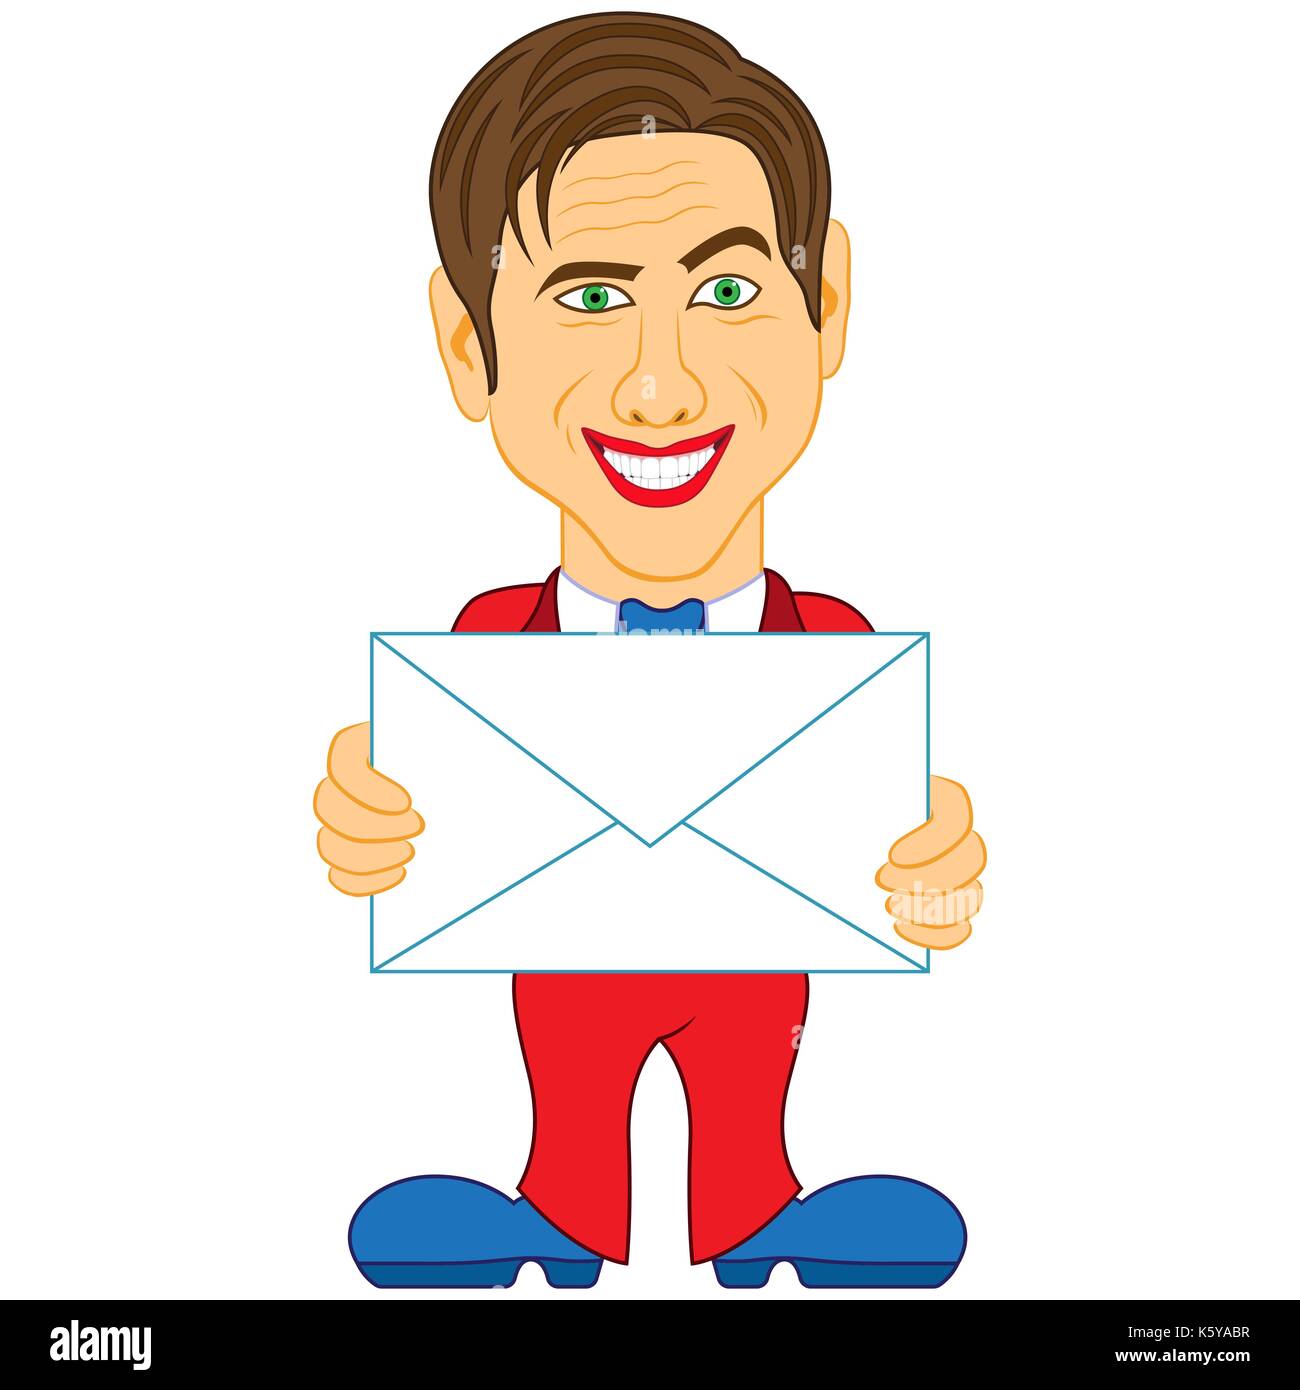 Lächelte gentleman hält einen geklebten Umschlag, konzeptionelle Farbe cartoon Vector Illustration Stock Vektor